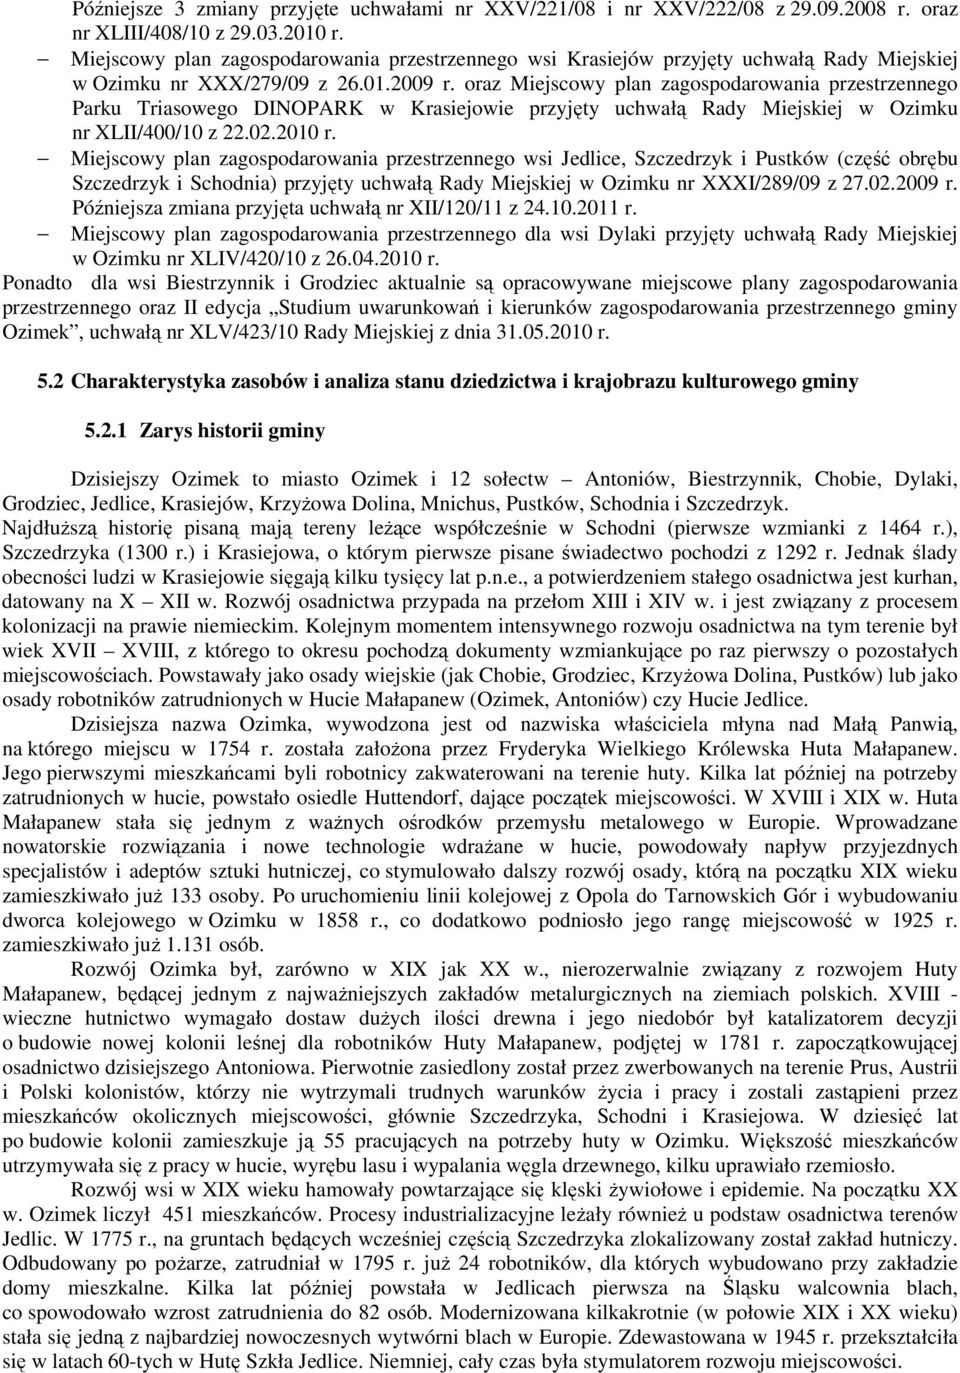 oraz Miejscowy plan zagospodarowania przestrzennego Parku Triasowego DINOPARK w Krasiejowie przyjęty uchwałą Rady Miejskiej w Ozimku nr XLII/400/10 z 22.02.2010 r.